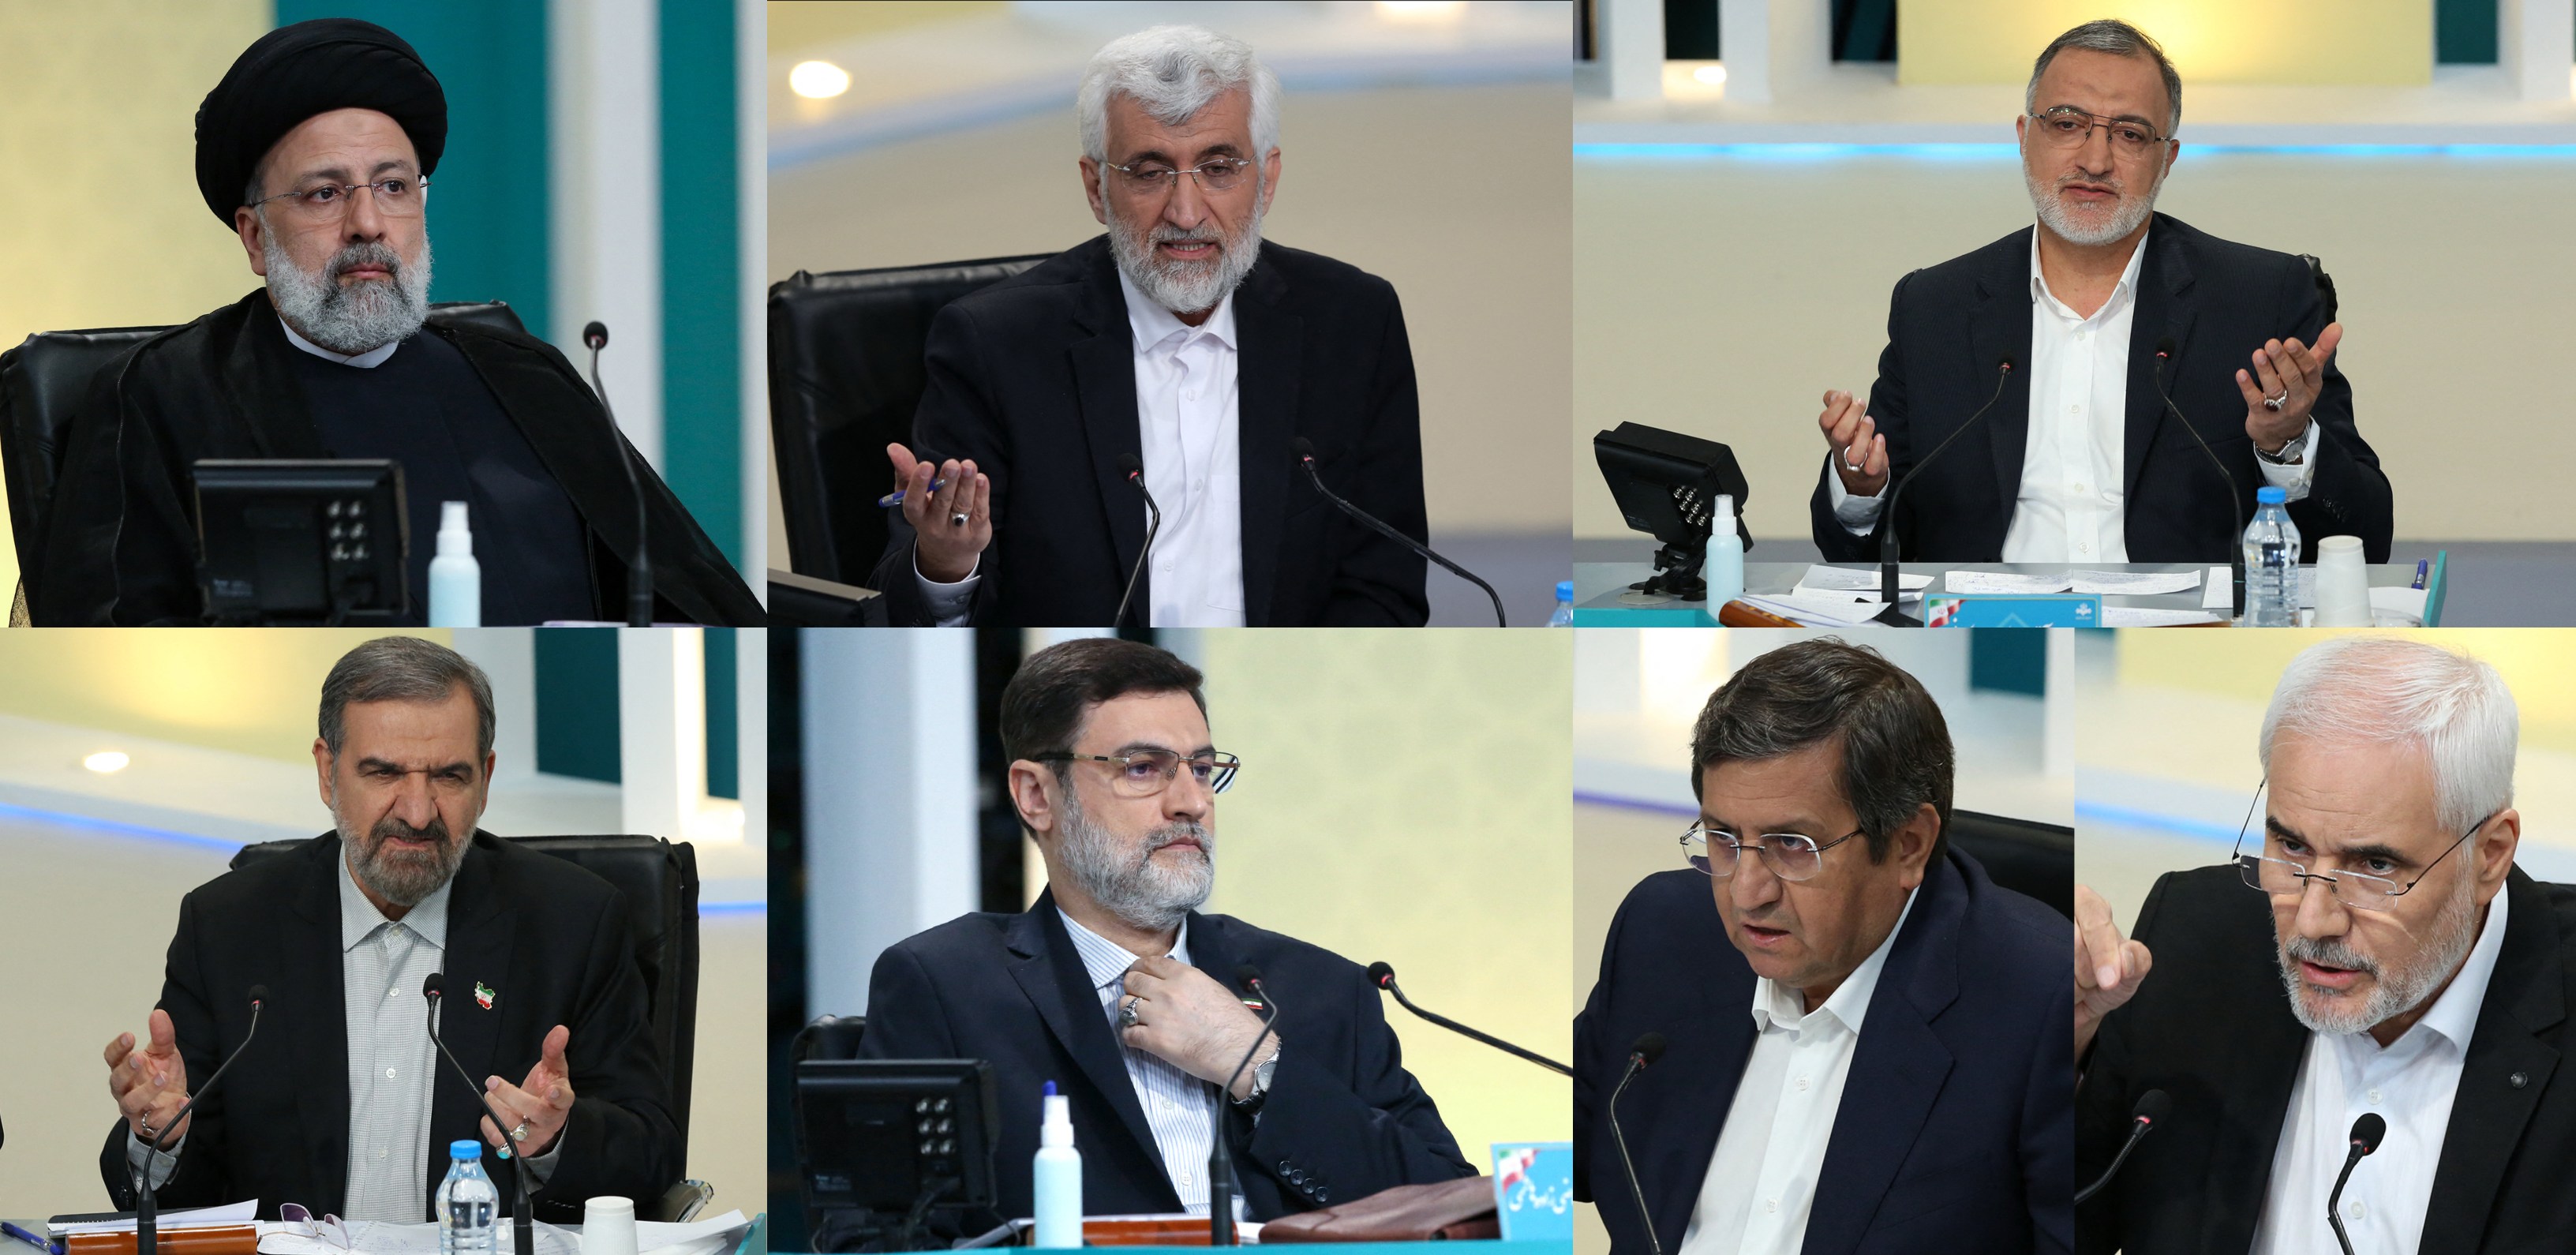 Les candidats lors d’un débat le 8 juin. De haut en bas et de gauche à droite : Raïssi, Jalili, Zakani, Rezaï, Ghazizadeh-Hashemi, Hemmati et Mehralizadeh (AFP/photos fournies)